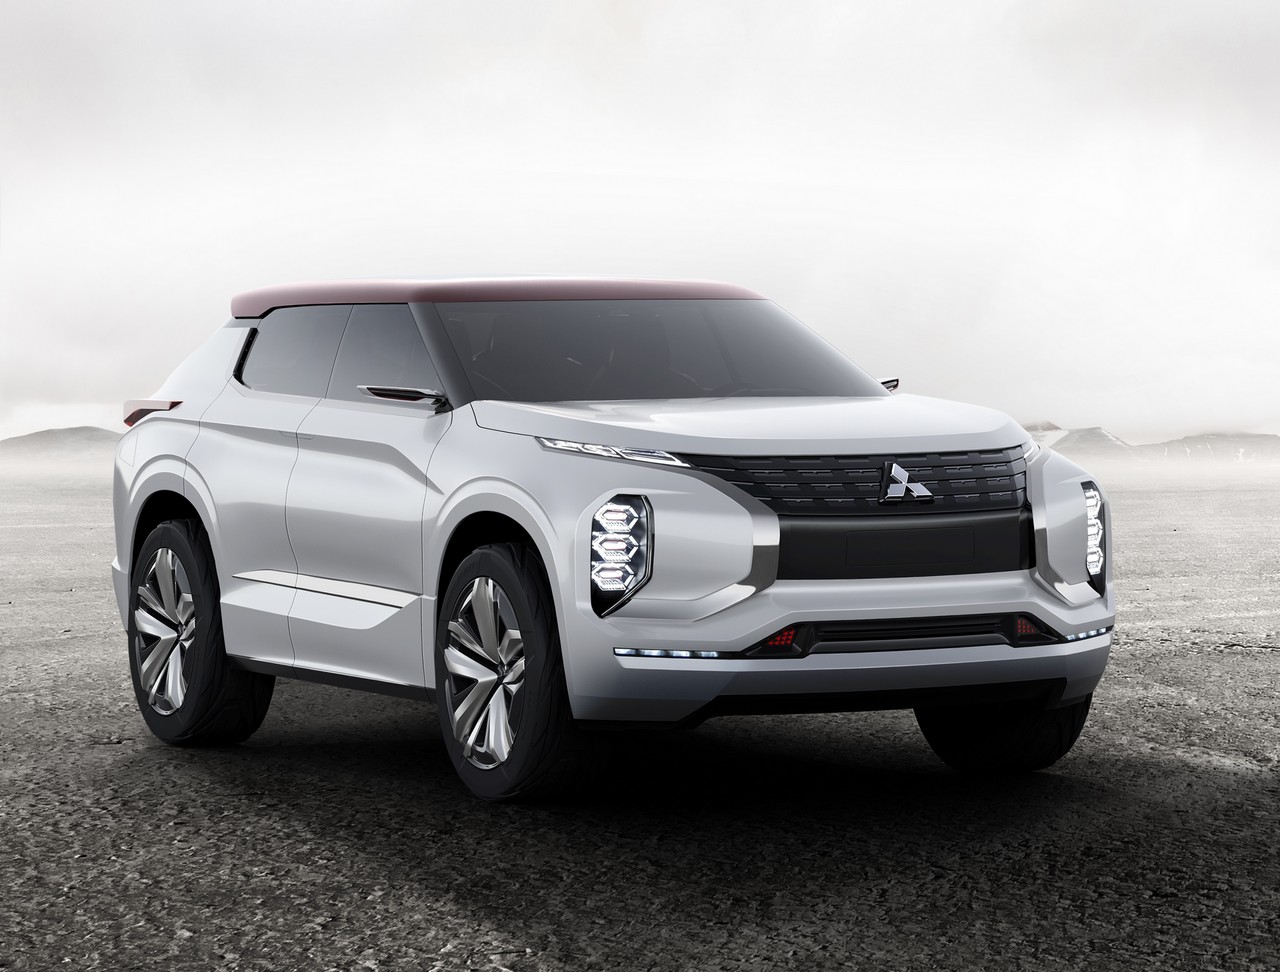 Mitsubishi presentará el GT-PHEV Concept*1 en el Salón de París 2016